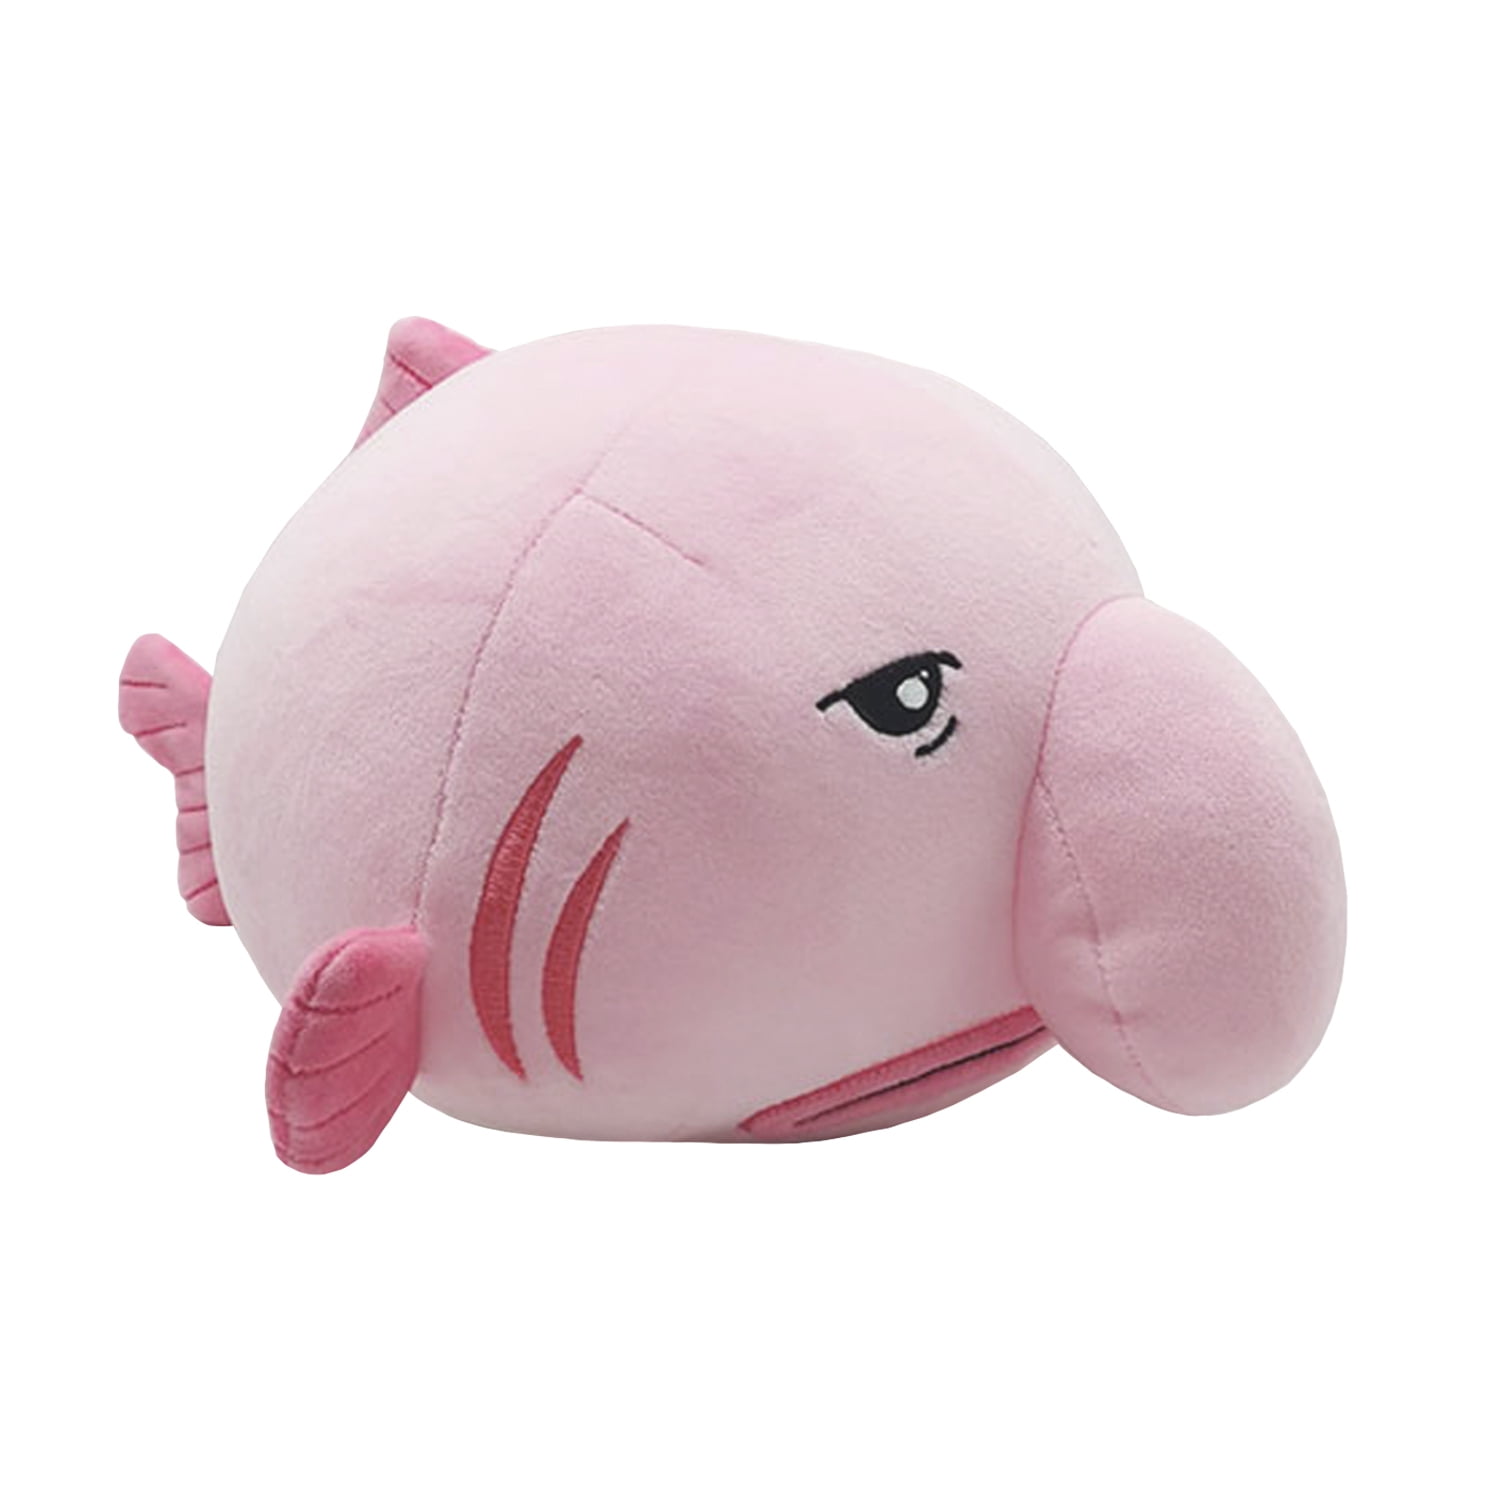 Blobfish Plush Pillow Cute Ugly Fish Blobfish Stuffed Animal